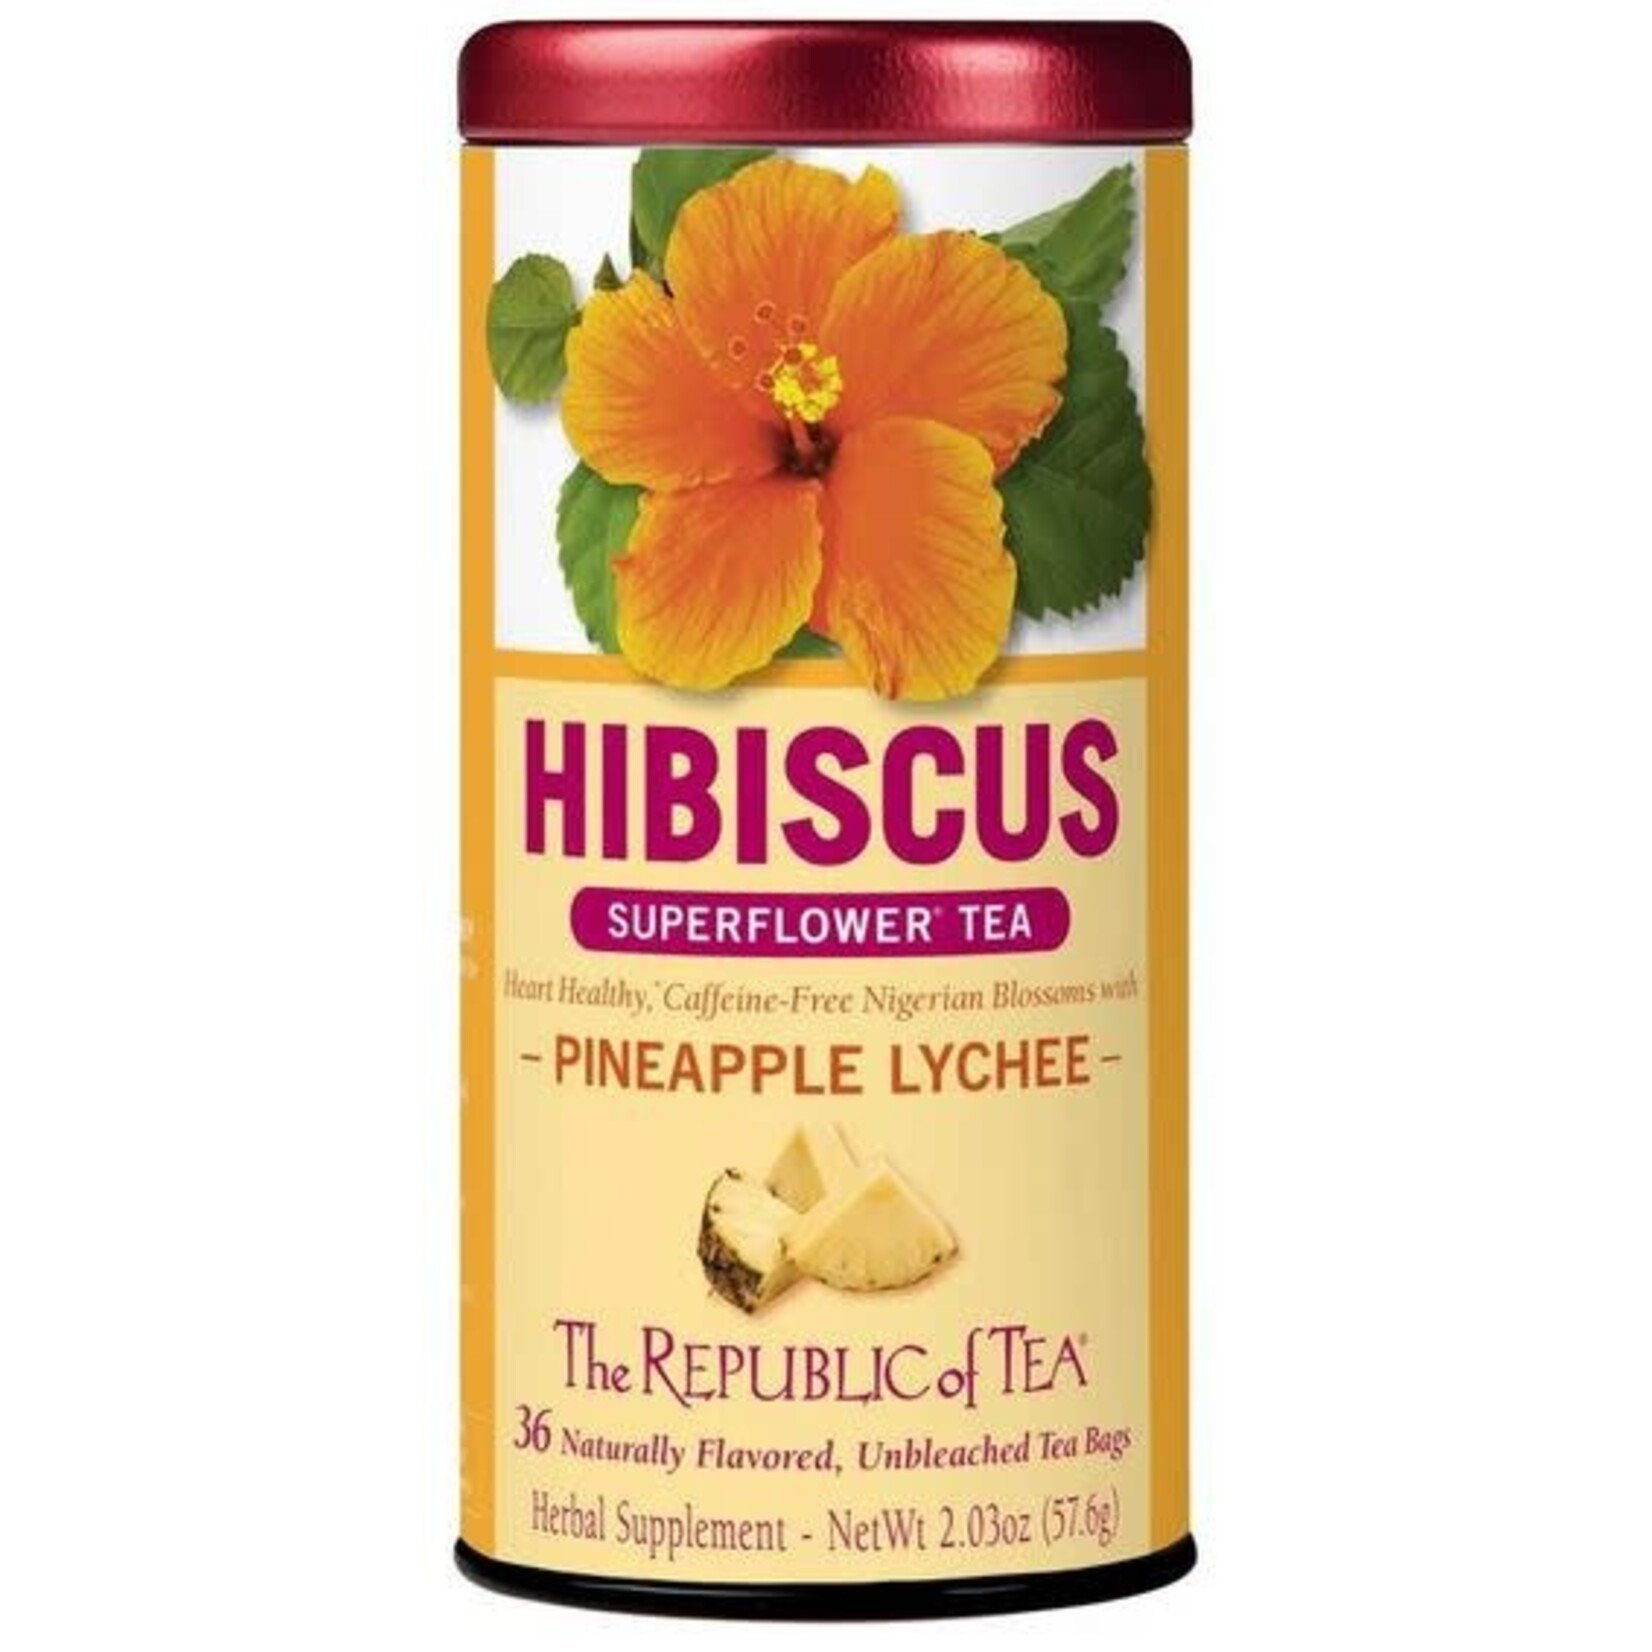 The Republic of Tea Tea: Pineapple Lychee Hibiscus Tea (36 Tea Bags)